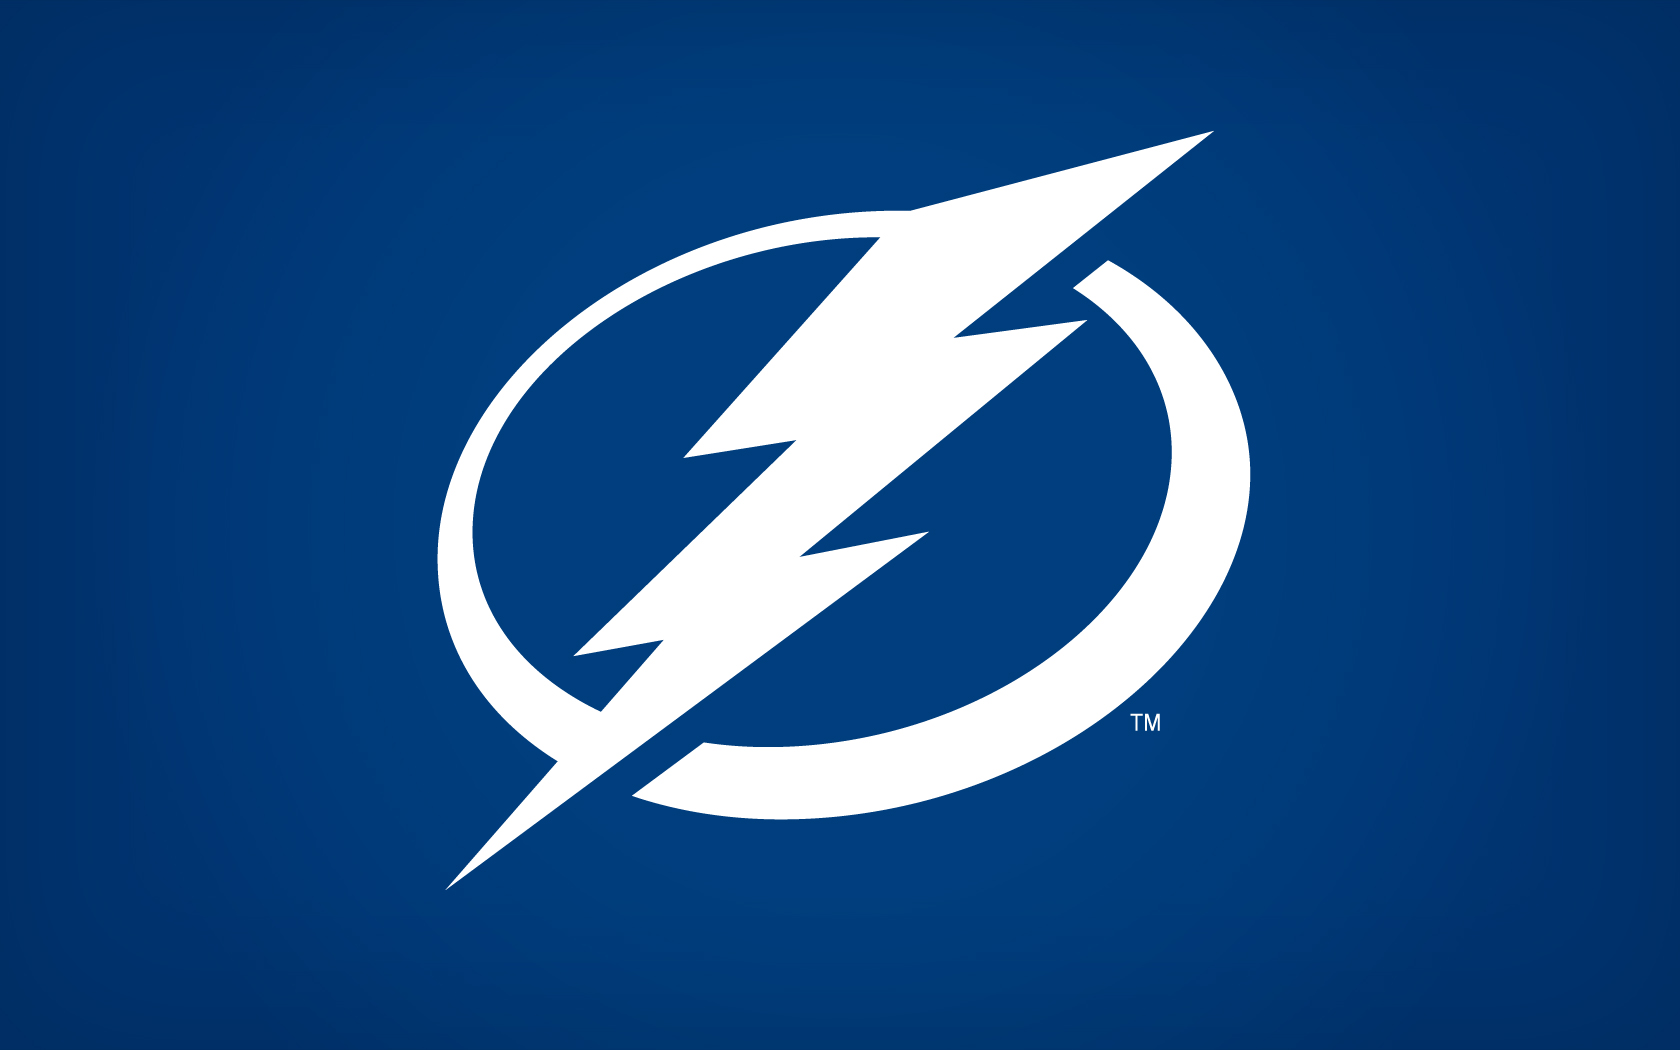 TBL Logo Wallpaper Tampa Bay Lightning Wallpaper